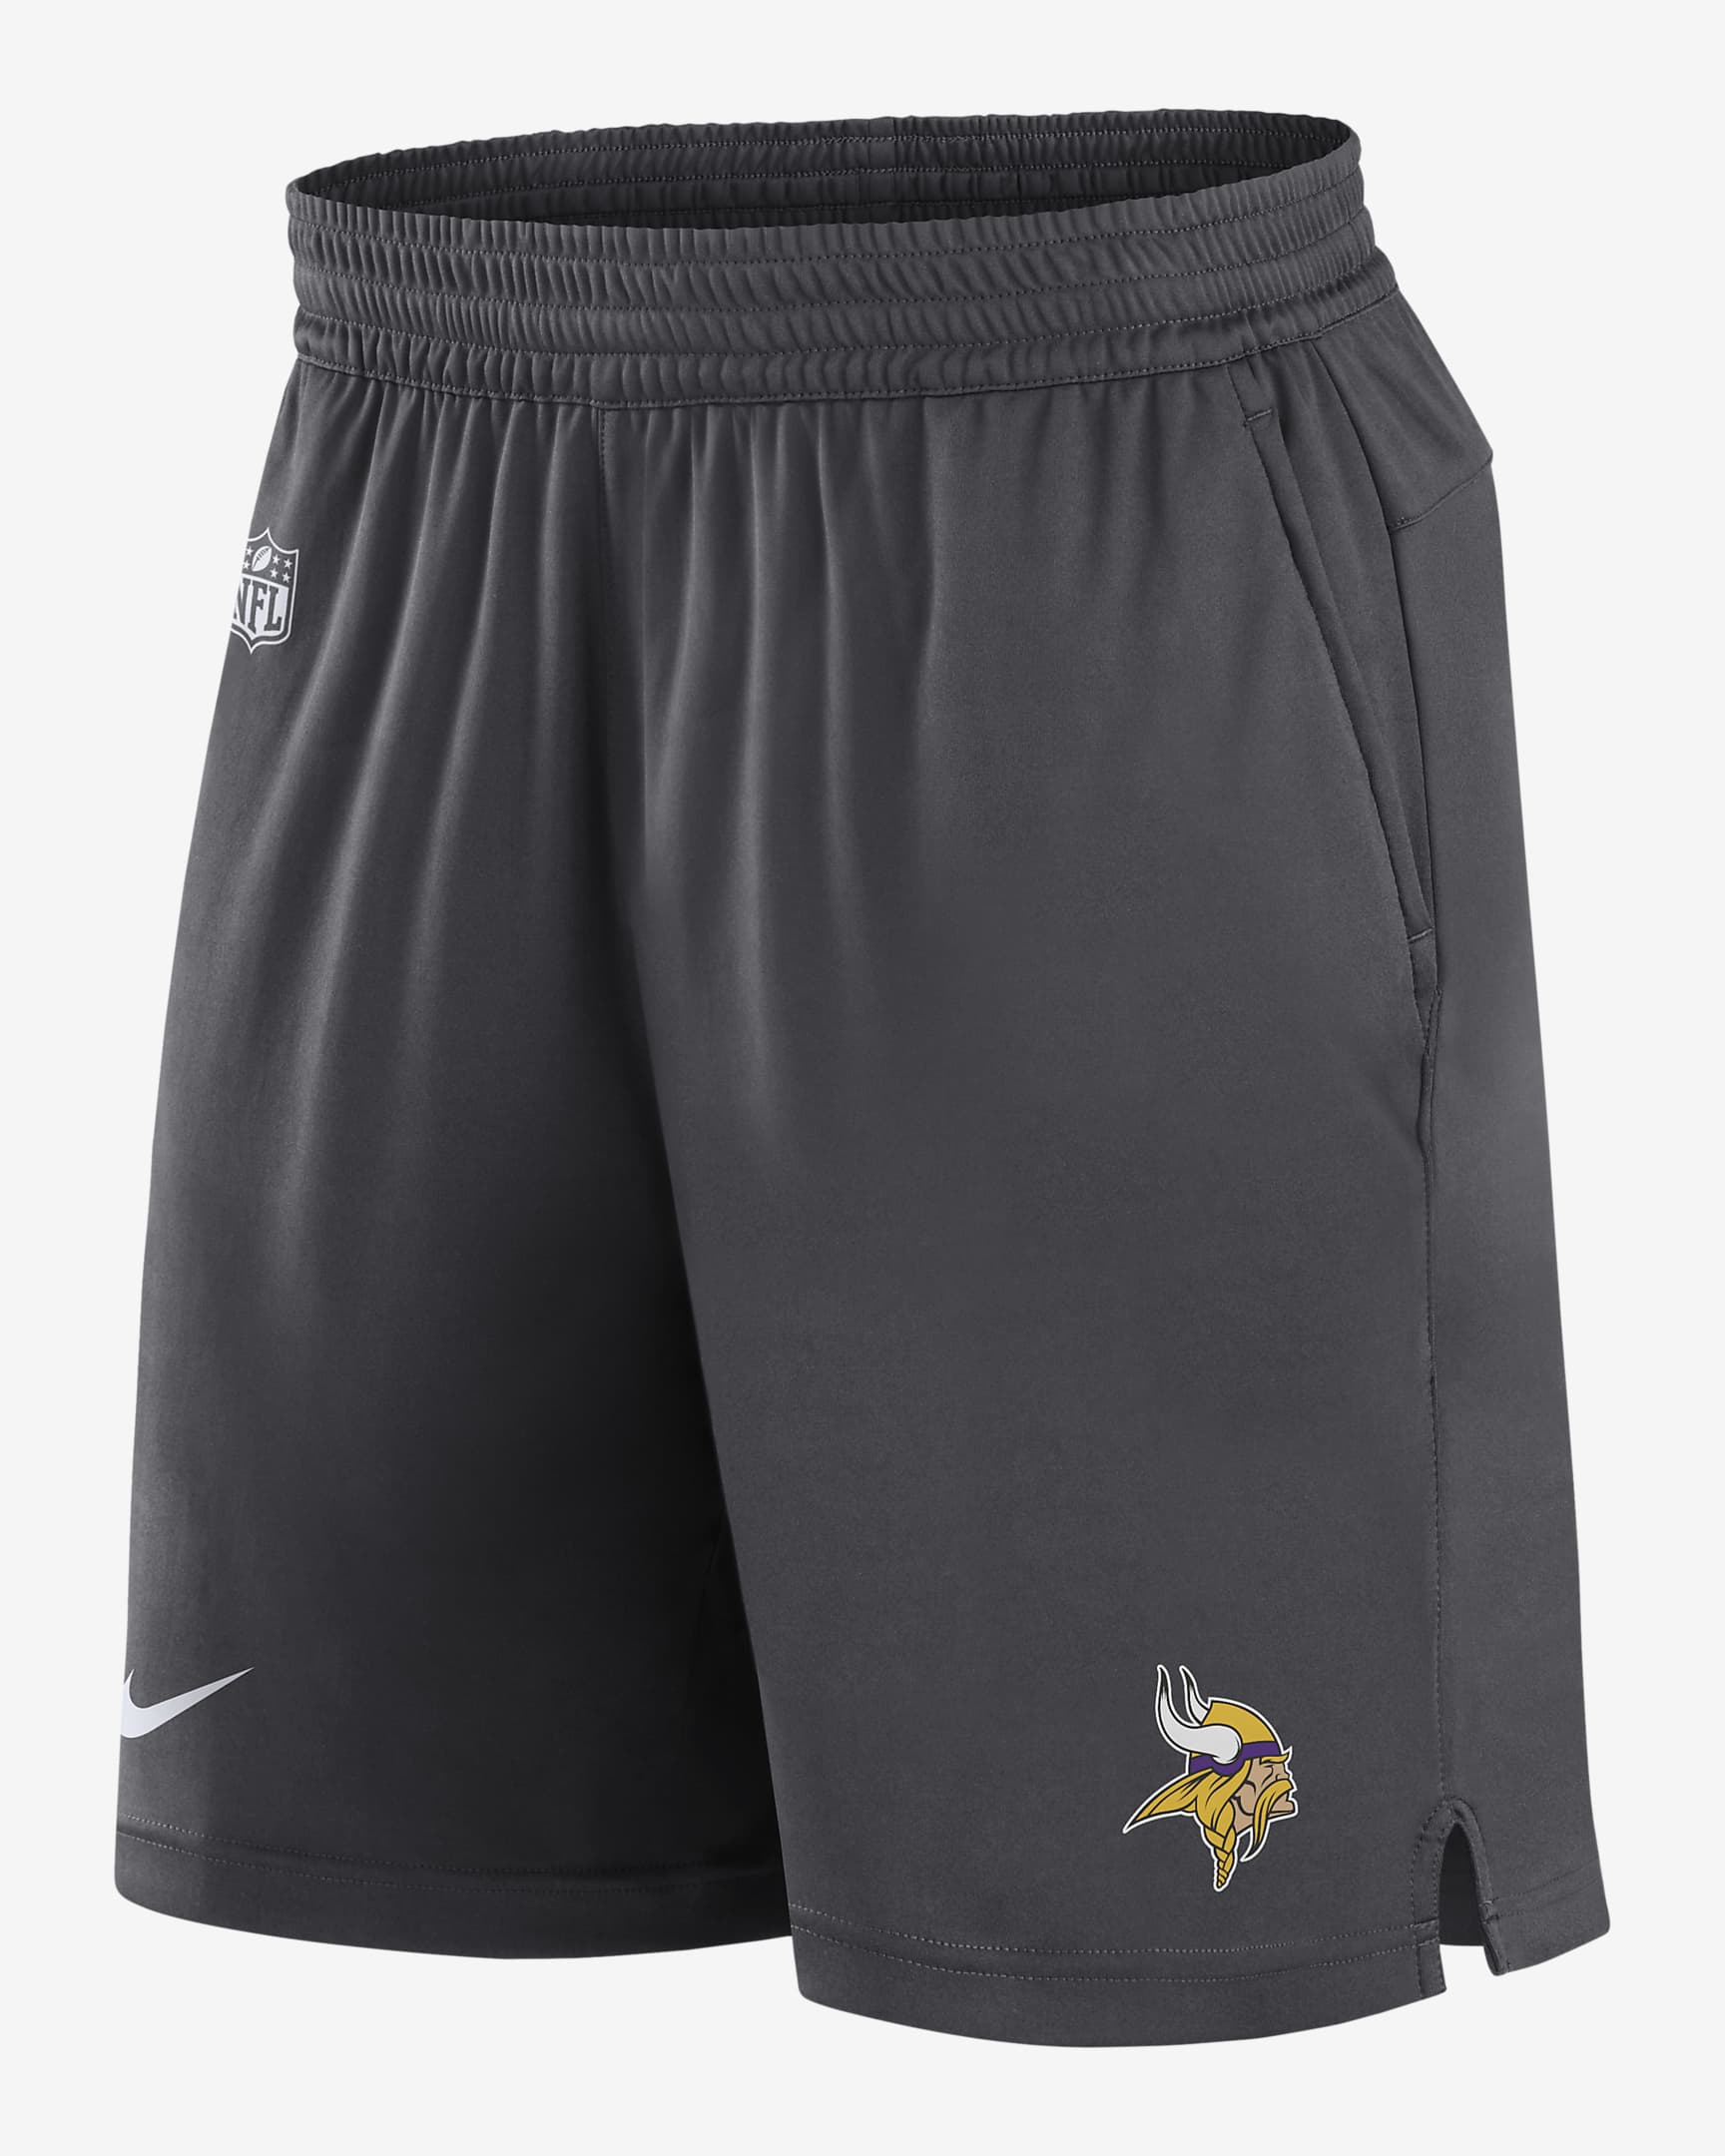 Shorts para hombre Nike Dri-FIT Sideline (NFL Minnesota Vikings). Nike.com